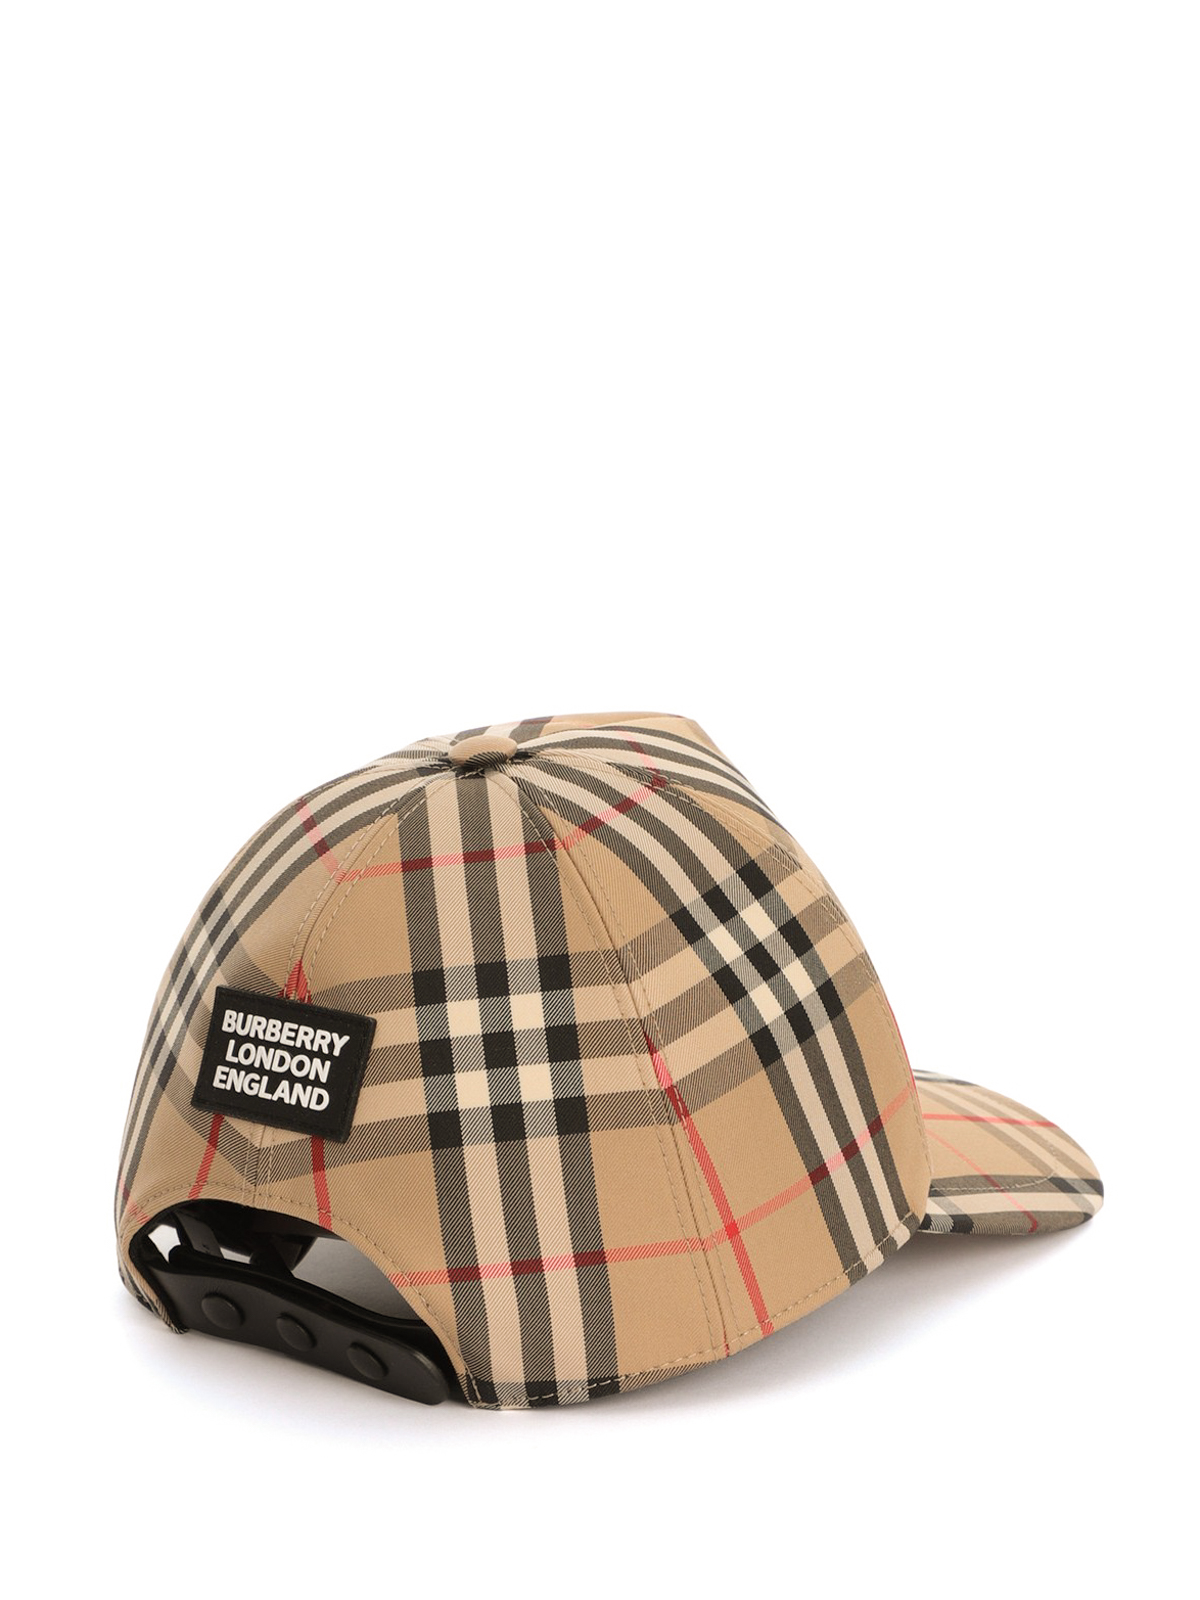 kapitalisme udbytte når som helst Hats & caps Burberry - Vintage Check baseball cap - 8026929